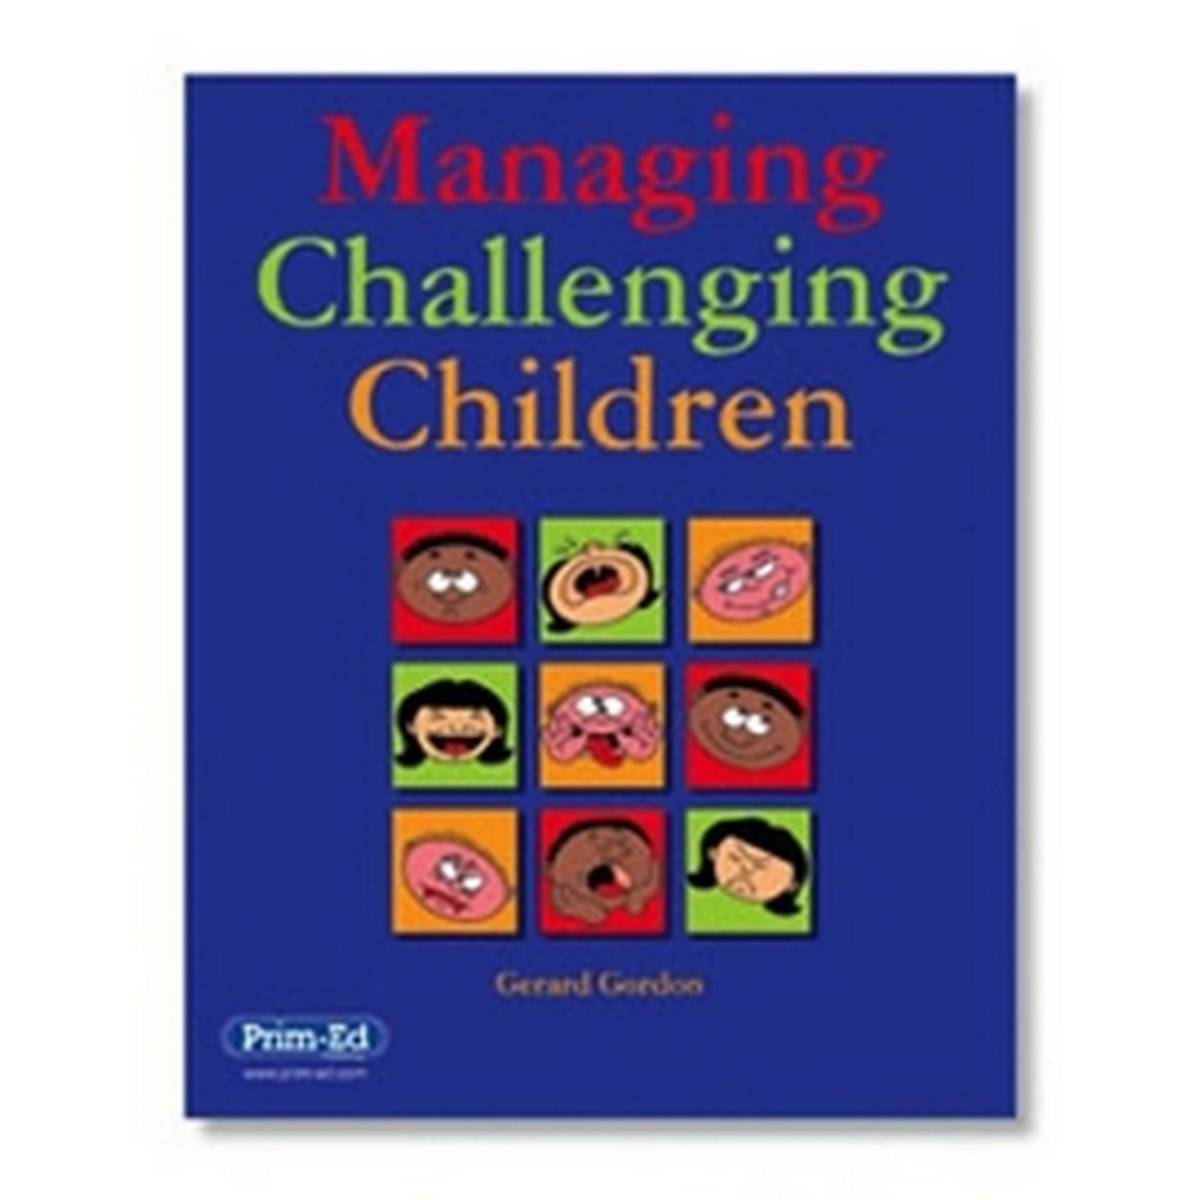 Managing Challenging Children